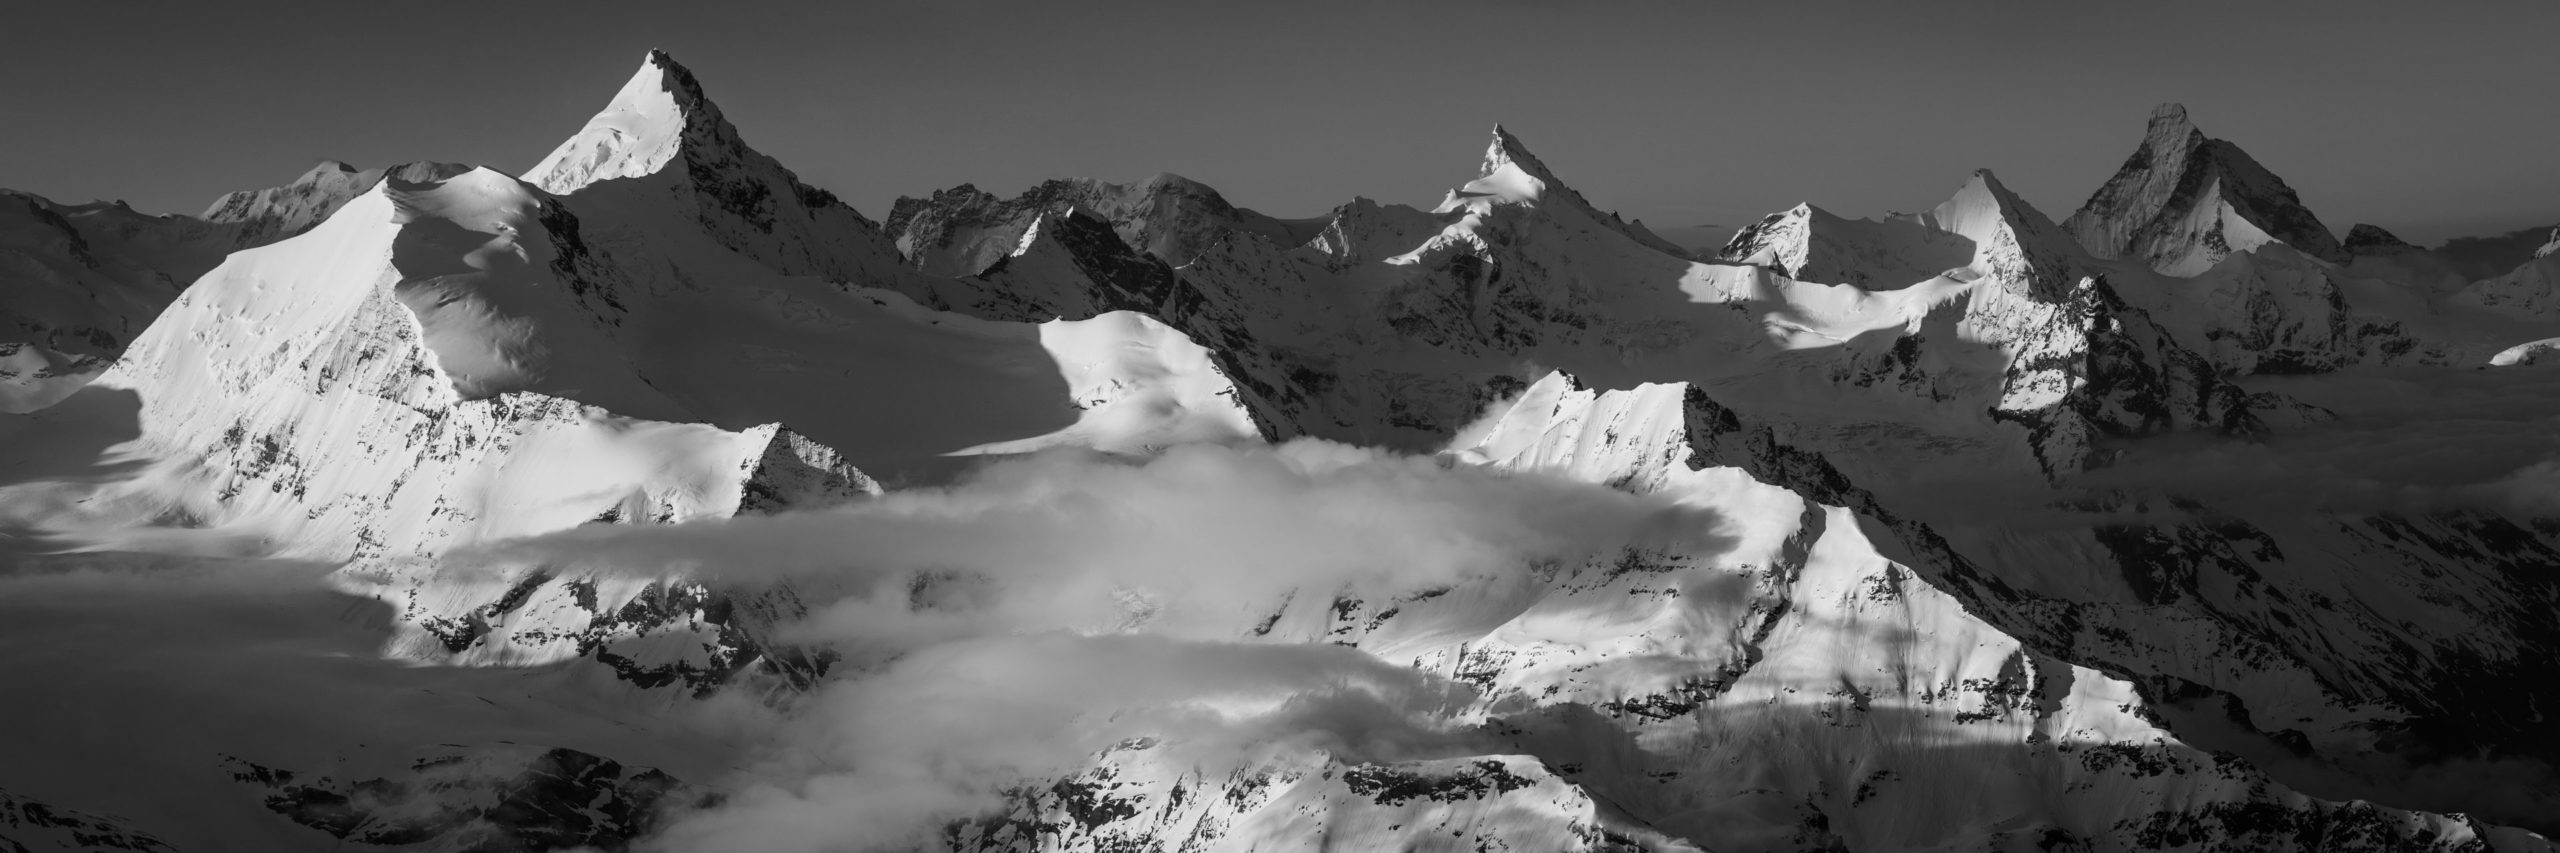 Image montagne Valais suisse - Photo de montagne en noir et blanc Alpes - tableau panorama montagne - photo montagne coucher de soleil